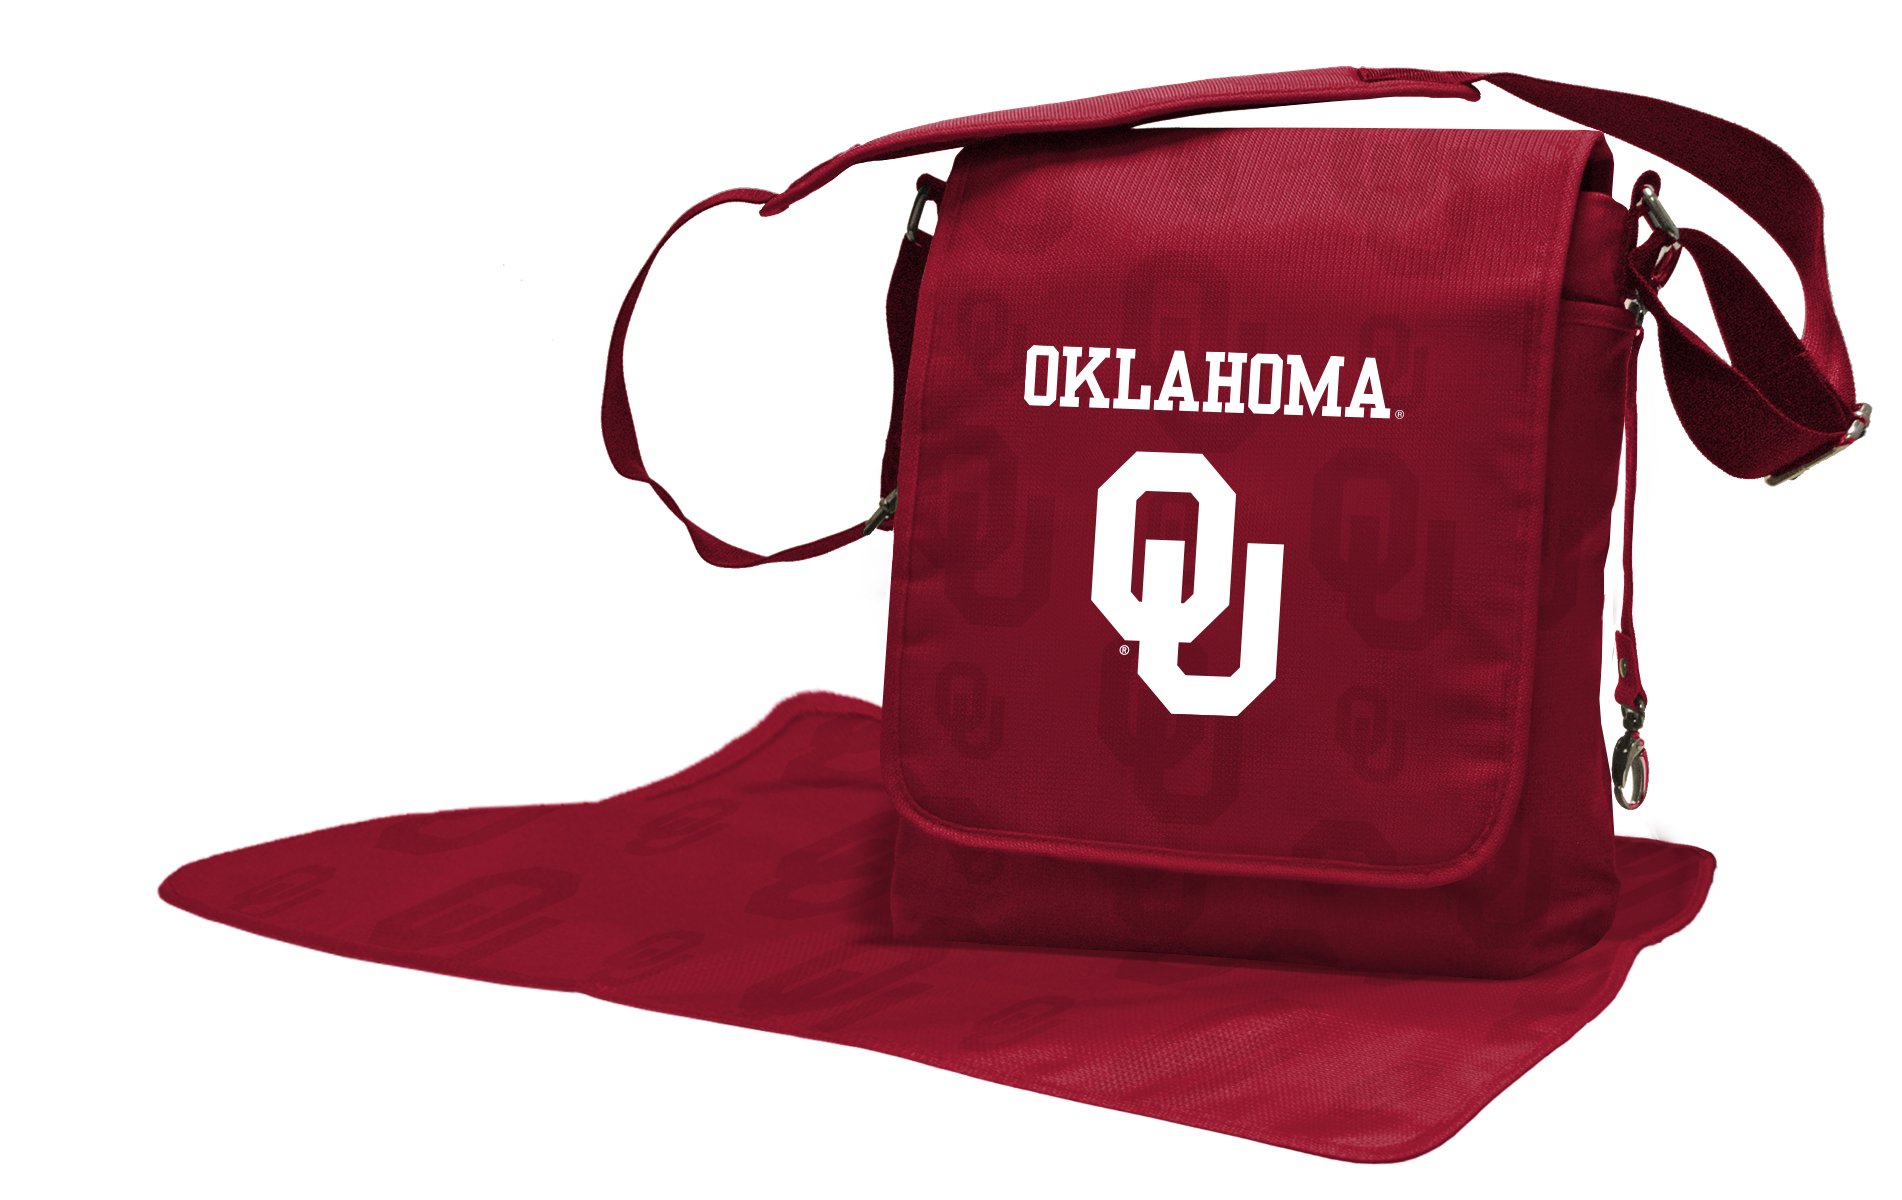 Oklahoma Sooners Baby Diaper Bag